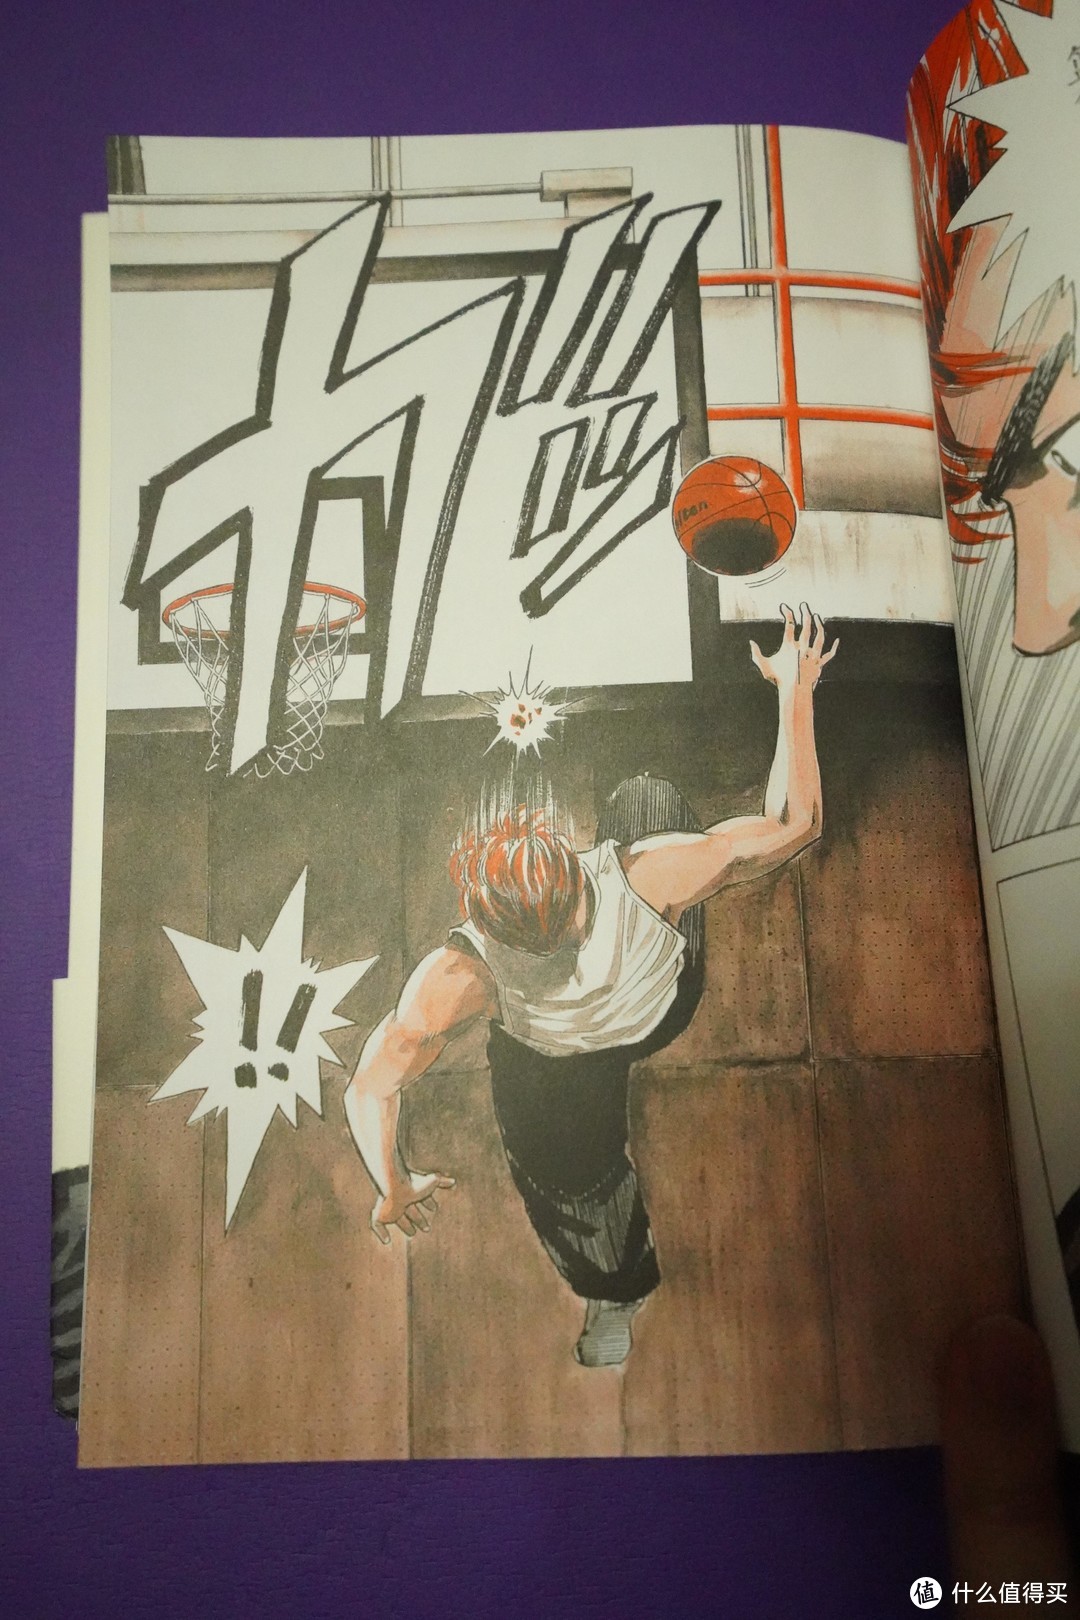 《灌篮高手》这是一套为自己学生时代买单的漫画书